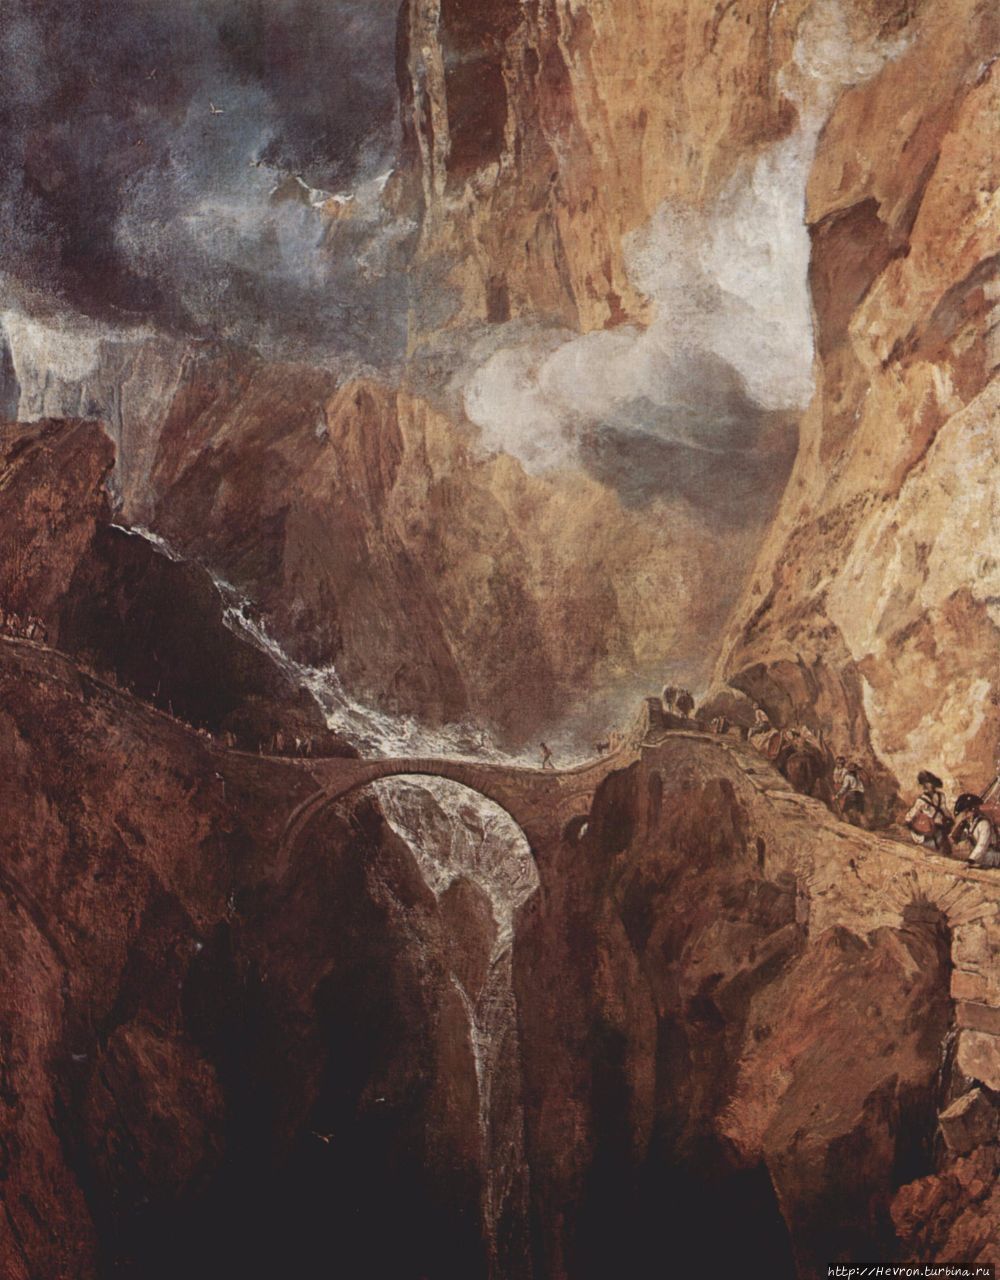 Первый мост. Картина написана Уильямом Тернером в 1803 или 1804 году. Андерматт, Швейцария